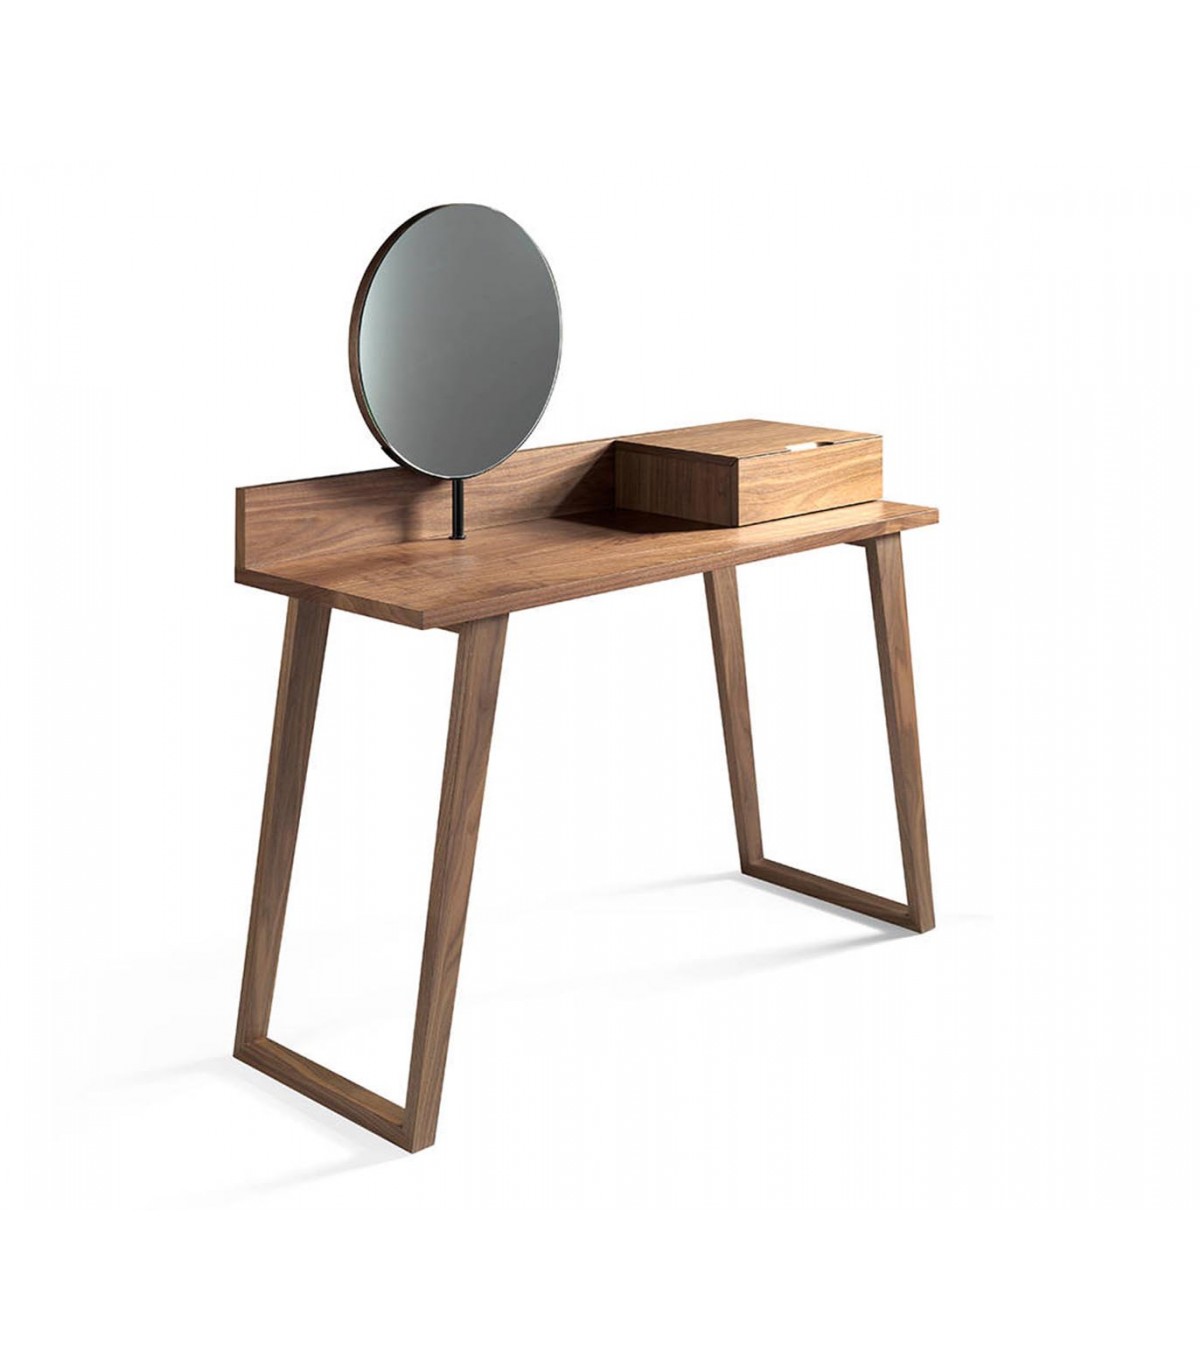 Mesa tocador madera, espejo y ratan